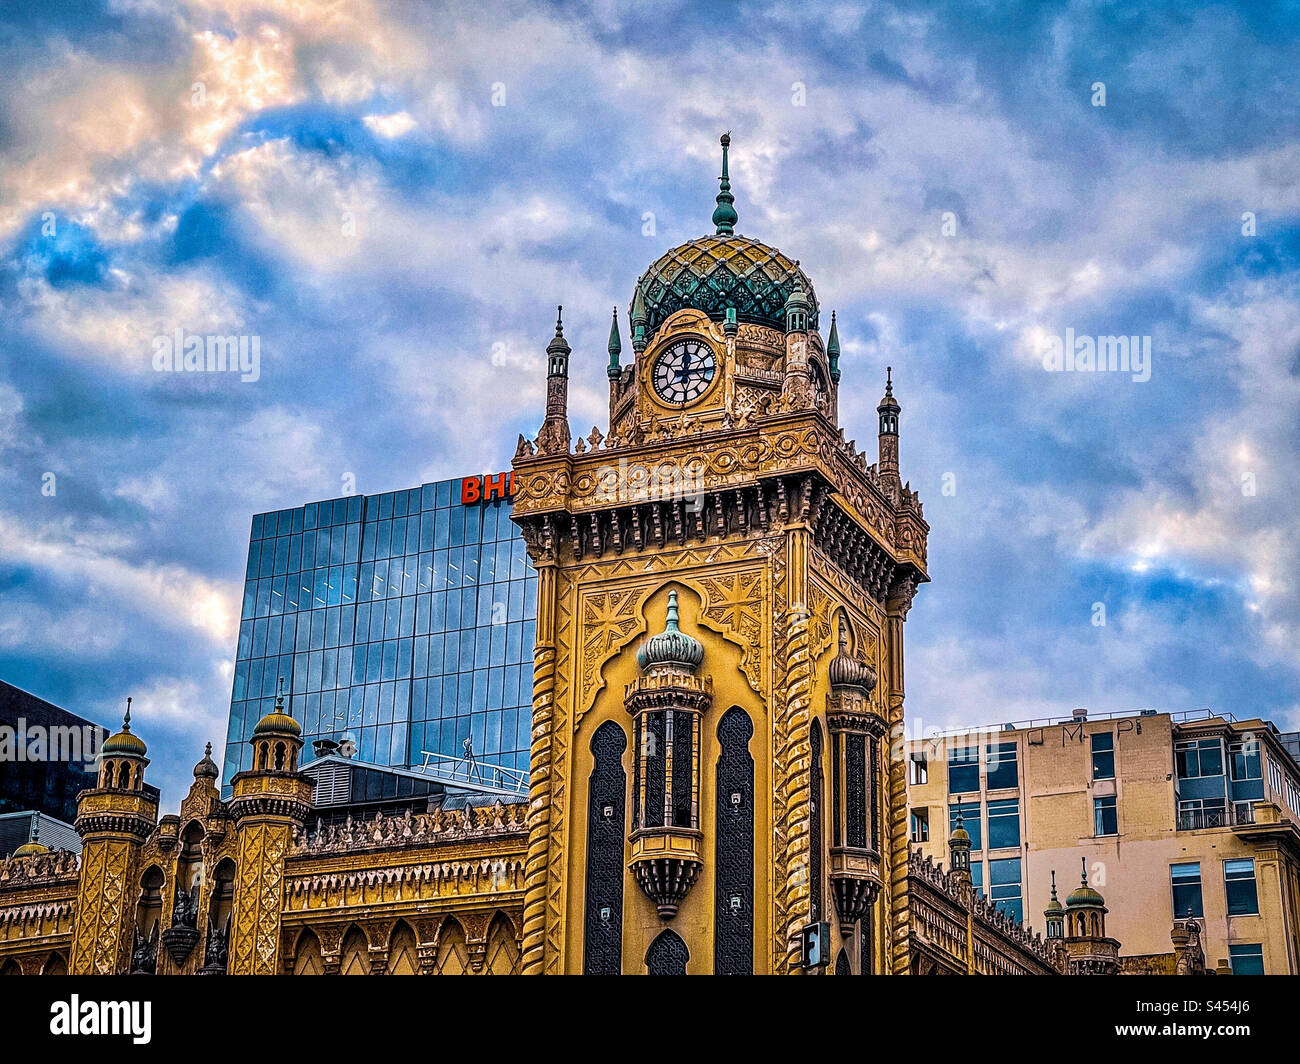 Vista dall'angolo basso della torre dell'orologio e dei minareti del teatro Forum di Melbourne, Victoria, Australia, contro il cielo blu nuvoloso. Architettura in stile moresco. Costruito nel 1929. Patrimonio. Foto Stock